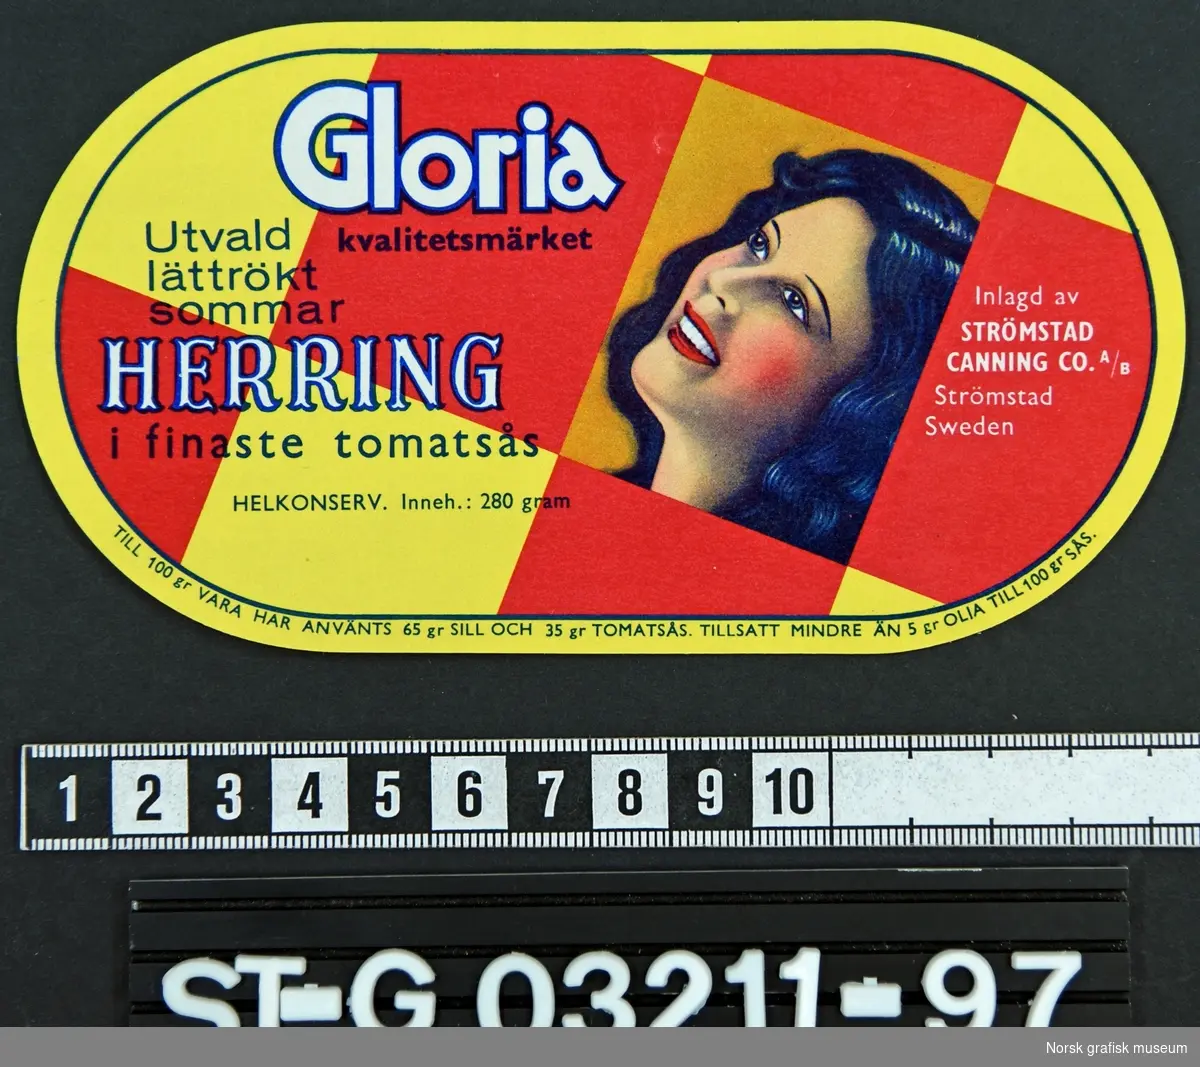 Oval etikett med røde og gule ruter, samt en fremstilling av en mørkhåret kvinne med blikket vendt oppover. 

"Utvald 
lättrökt
sommar 
HERRING
i finaste tomatsås""